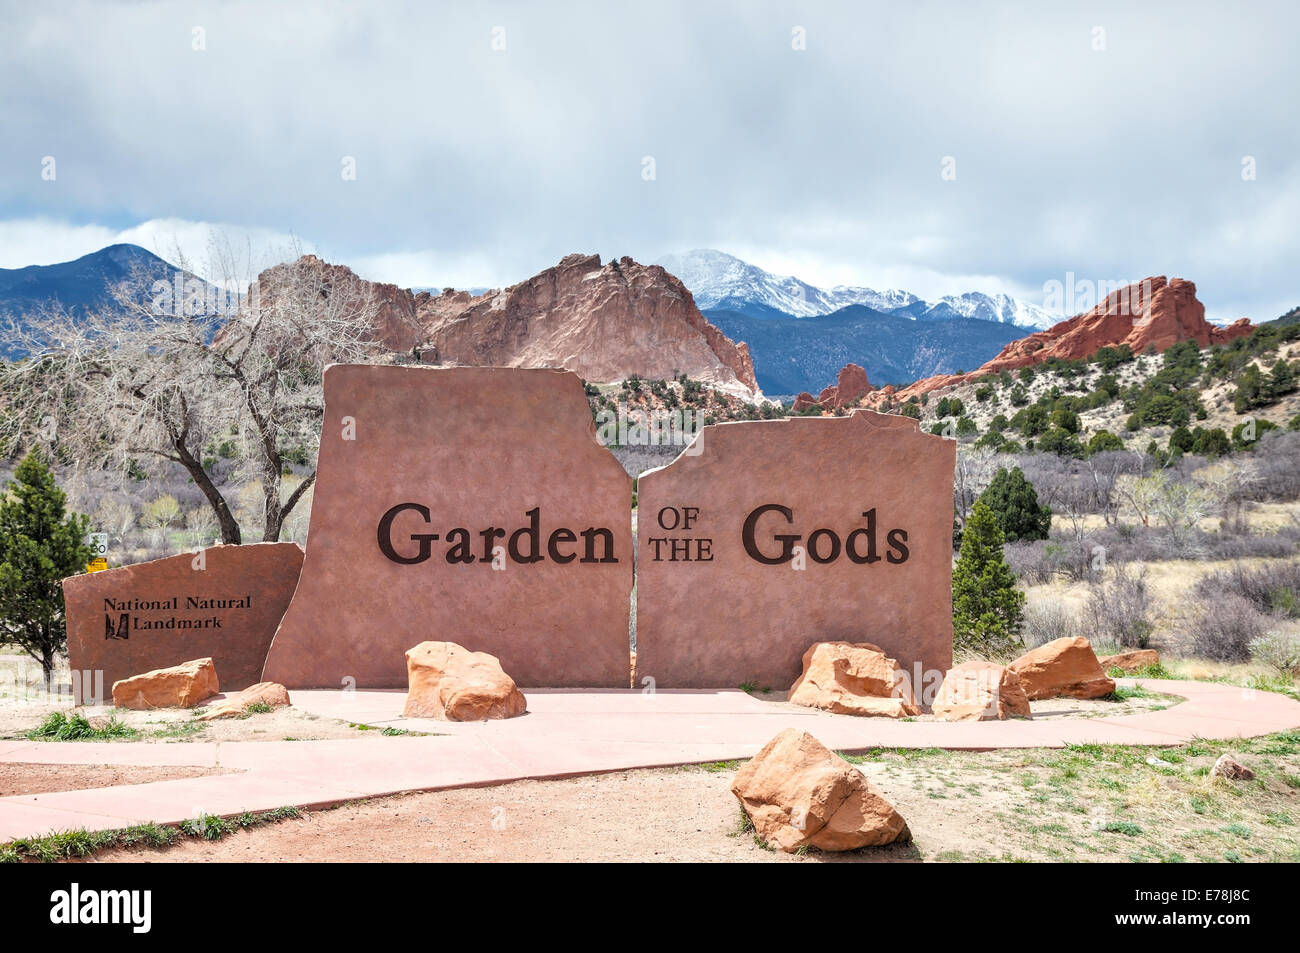 Garden of the Gods sign in Colorado Springs, Colorado Stock Photo